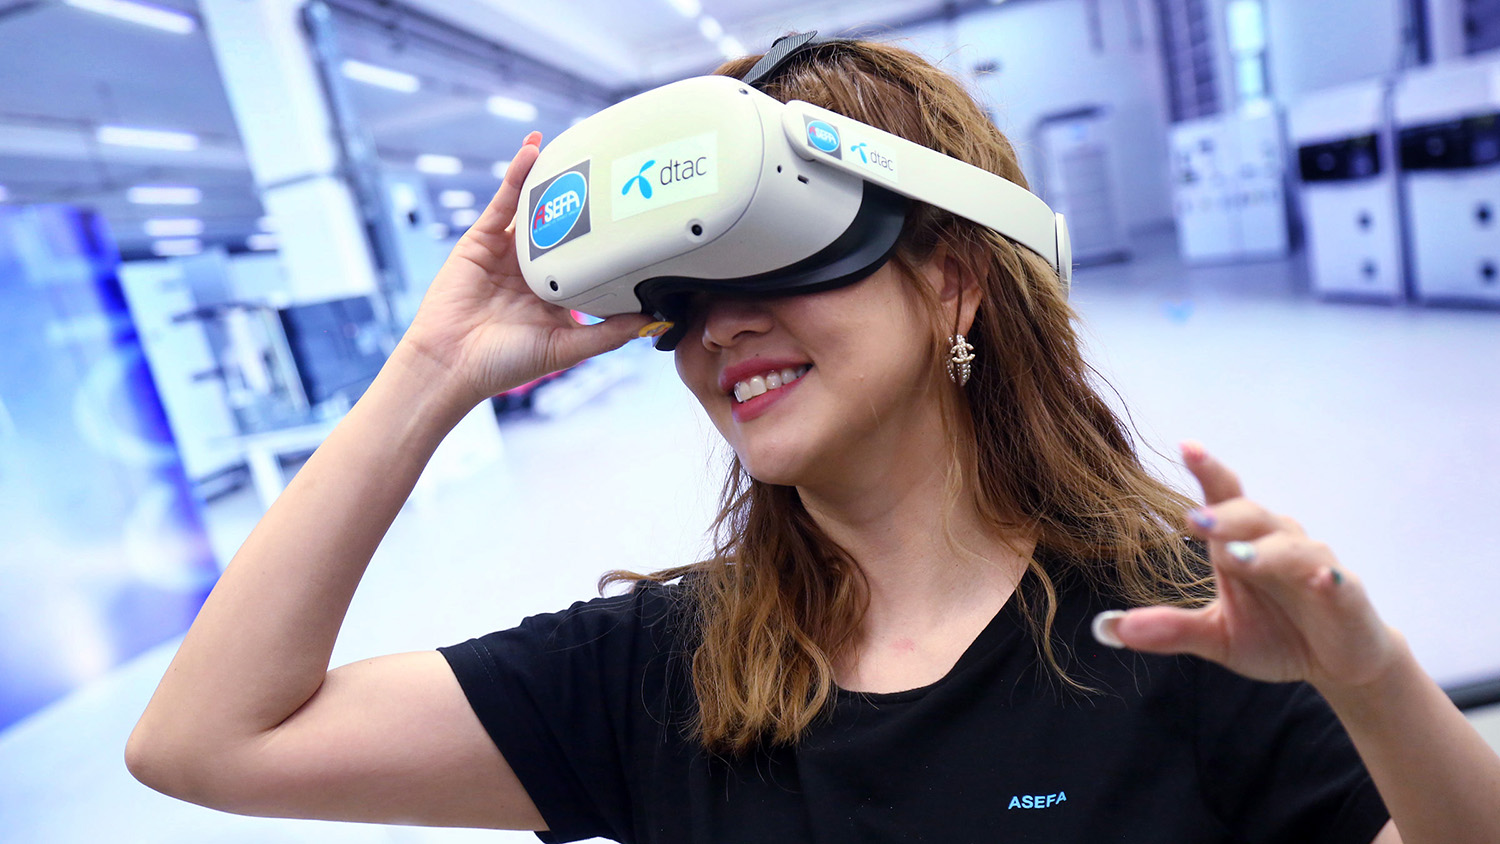 ดีแทค-อาซีฟา รุก 5G นำเทคโนโลยี VR ปลดล็อกสมาร์ทแฟคทอรี่